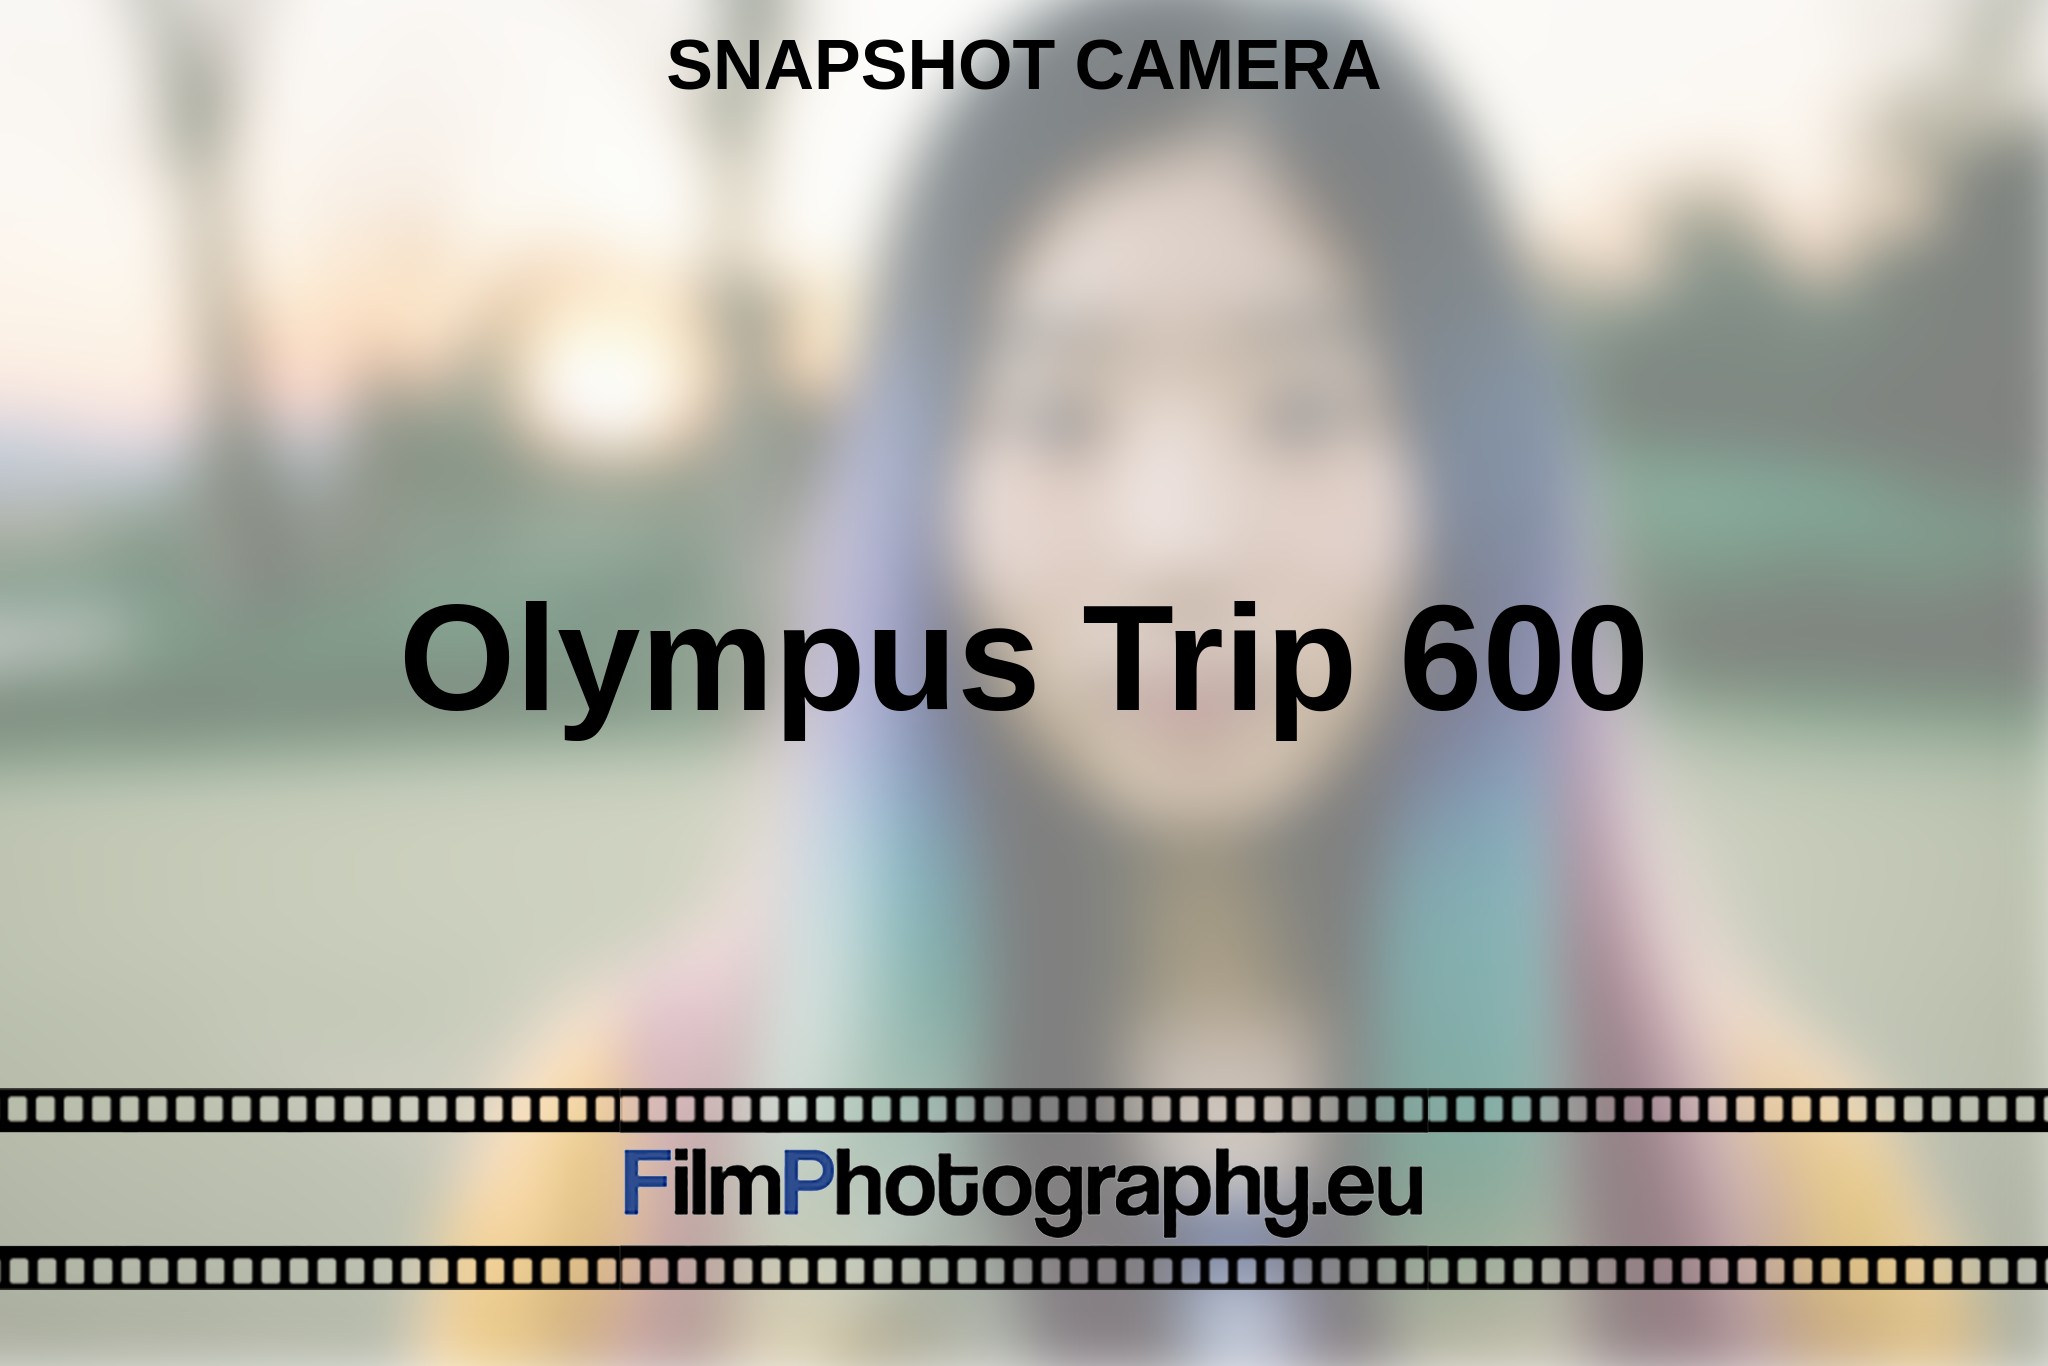 olympus-trip-600-snapshot-camera-en-bnv.jpg